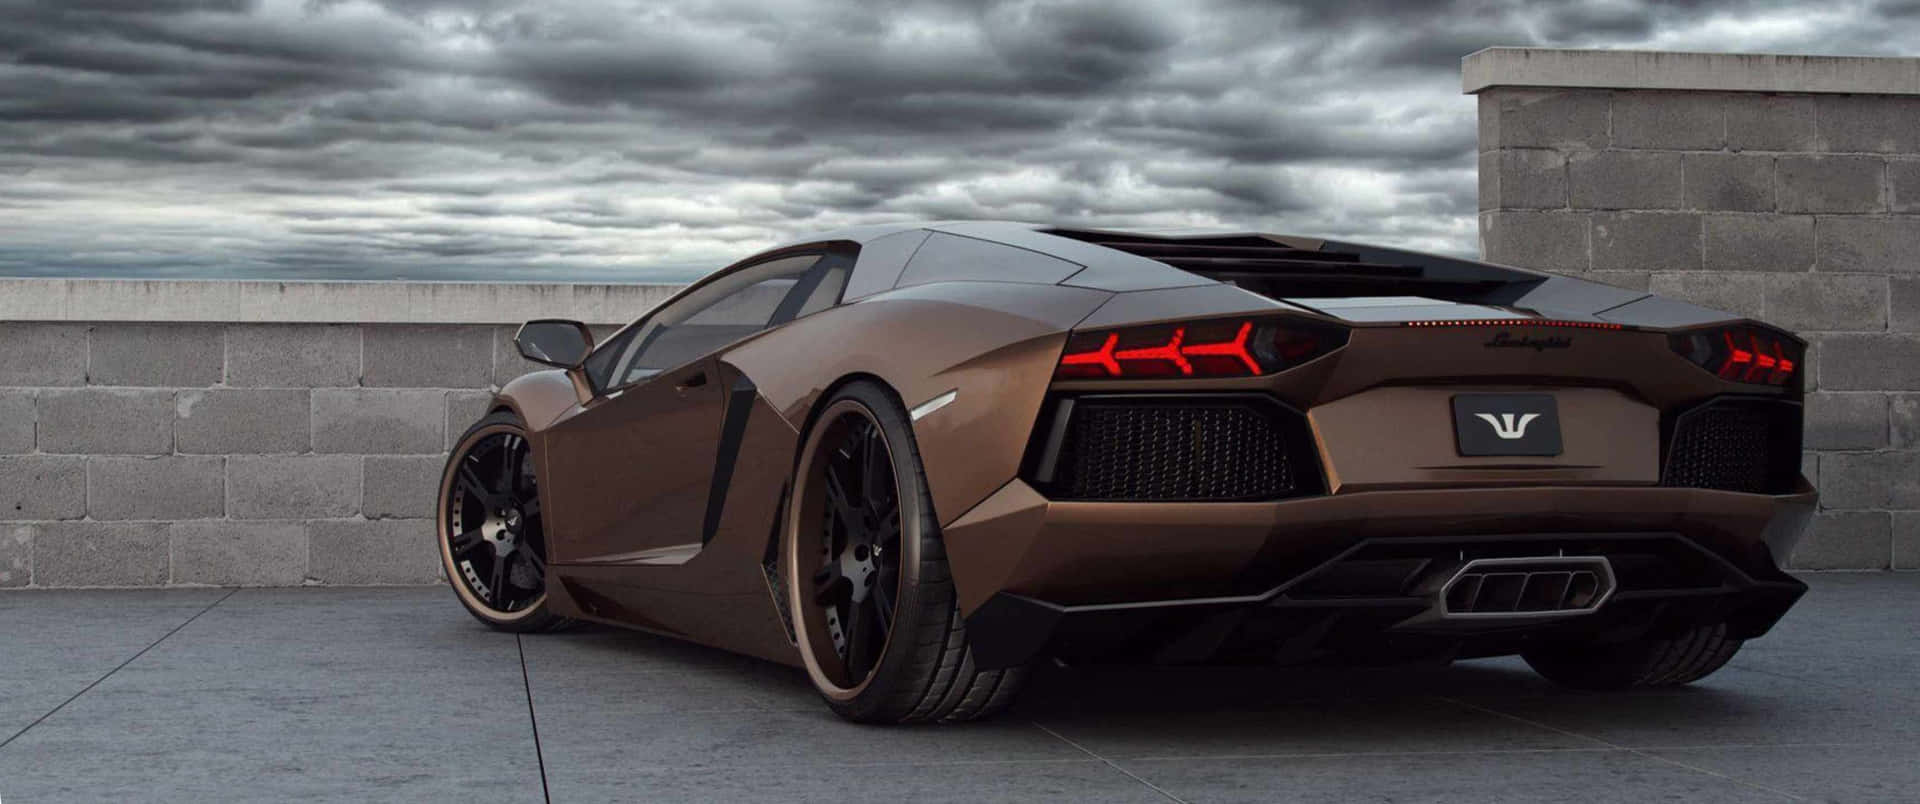 Prestazionidi Lusso: Mostra La Tua Lamborghini Su Uno Sfondo 3440x1440p